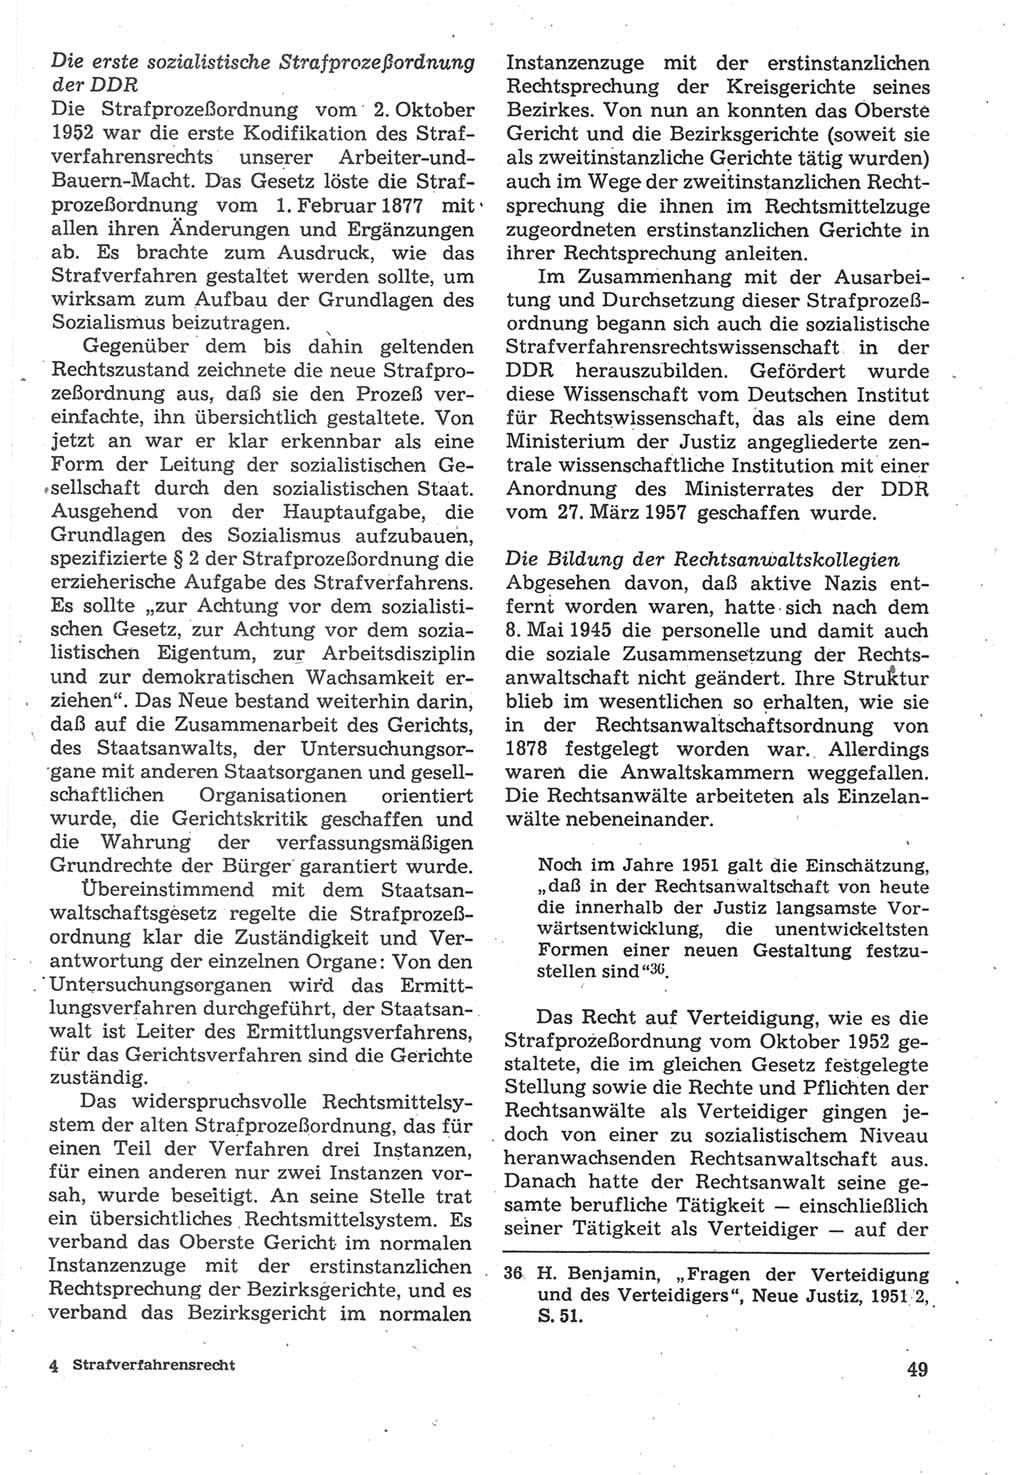 Strafverfahrensrecht [Deutsche Demokratische Republik (DDR)], Lehrbuch 1987, Seite 49 (Strafverf.-R. DDR Lb. 1987, S. 49)